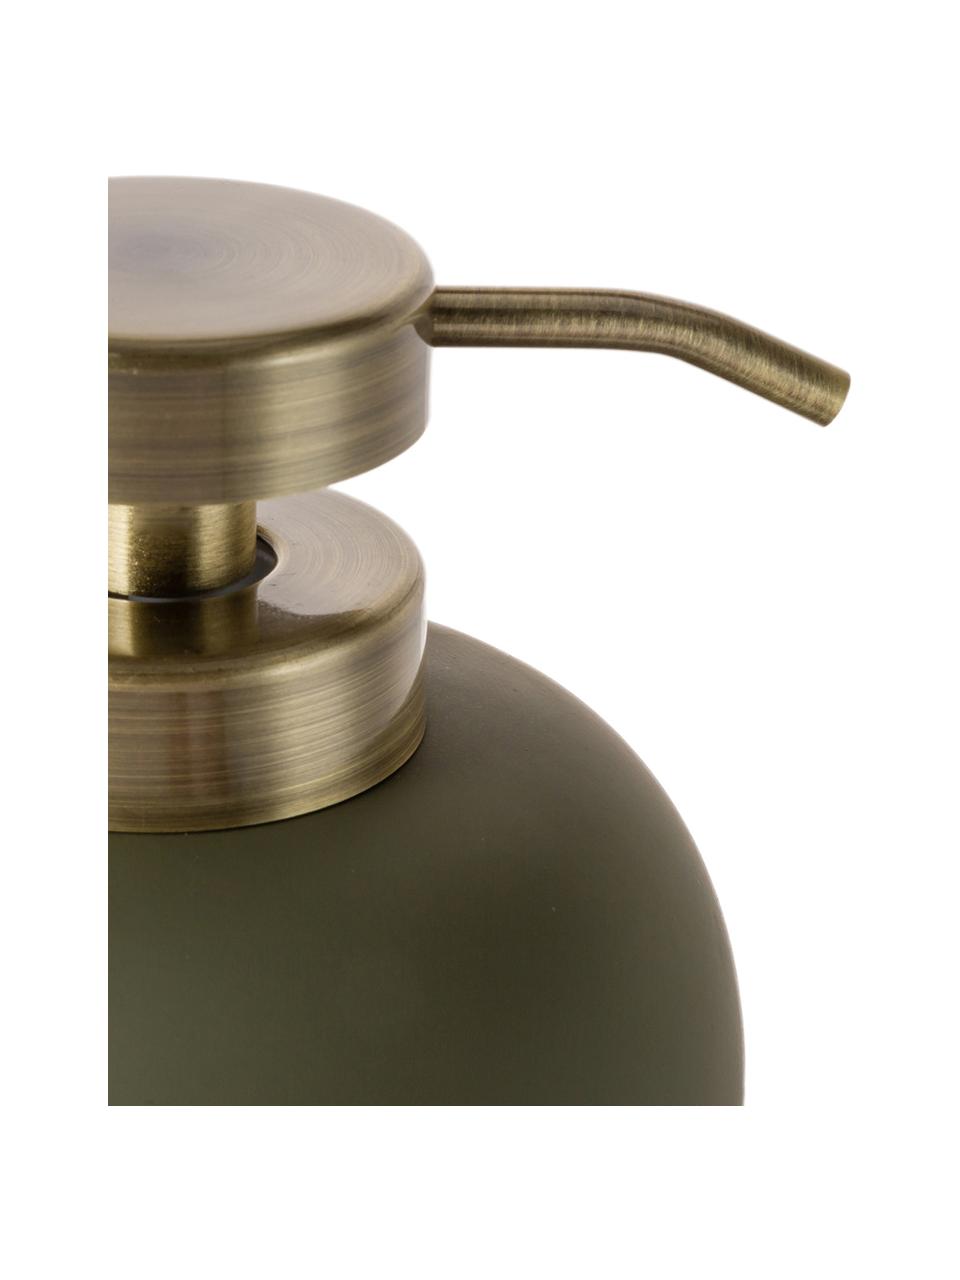 Dosificador de jabón Lotus, Recipiente: cerámica, Dosificador: metal, Verde oliva, latón, Ø 11 x Al 13 cm